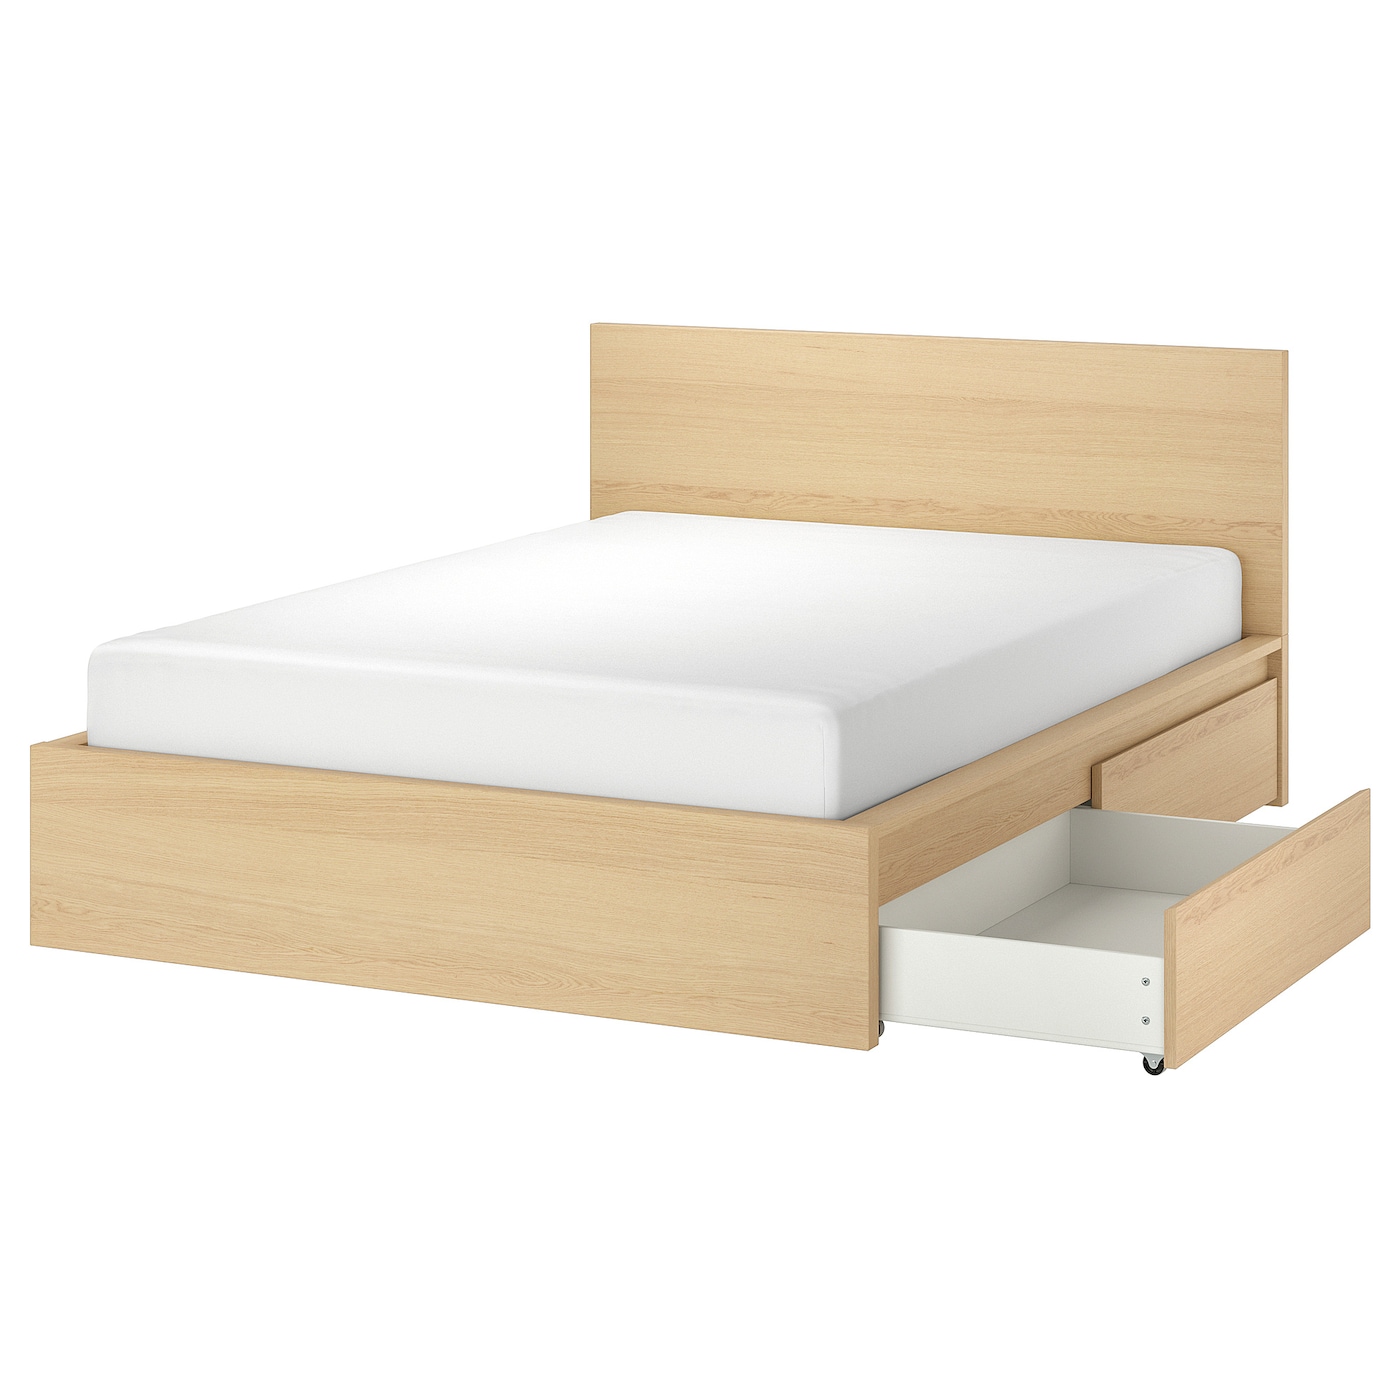 Каркас кровати с 2 ящиками для хранения - IKEA MALM, 200х160 см, под беленый дуб, МАЛЬМ ИКЕА